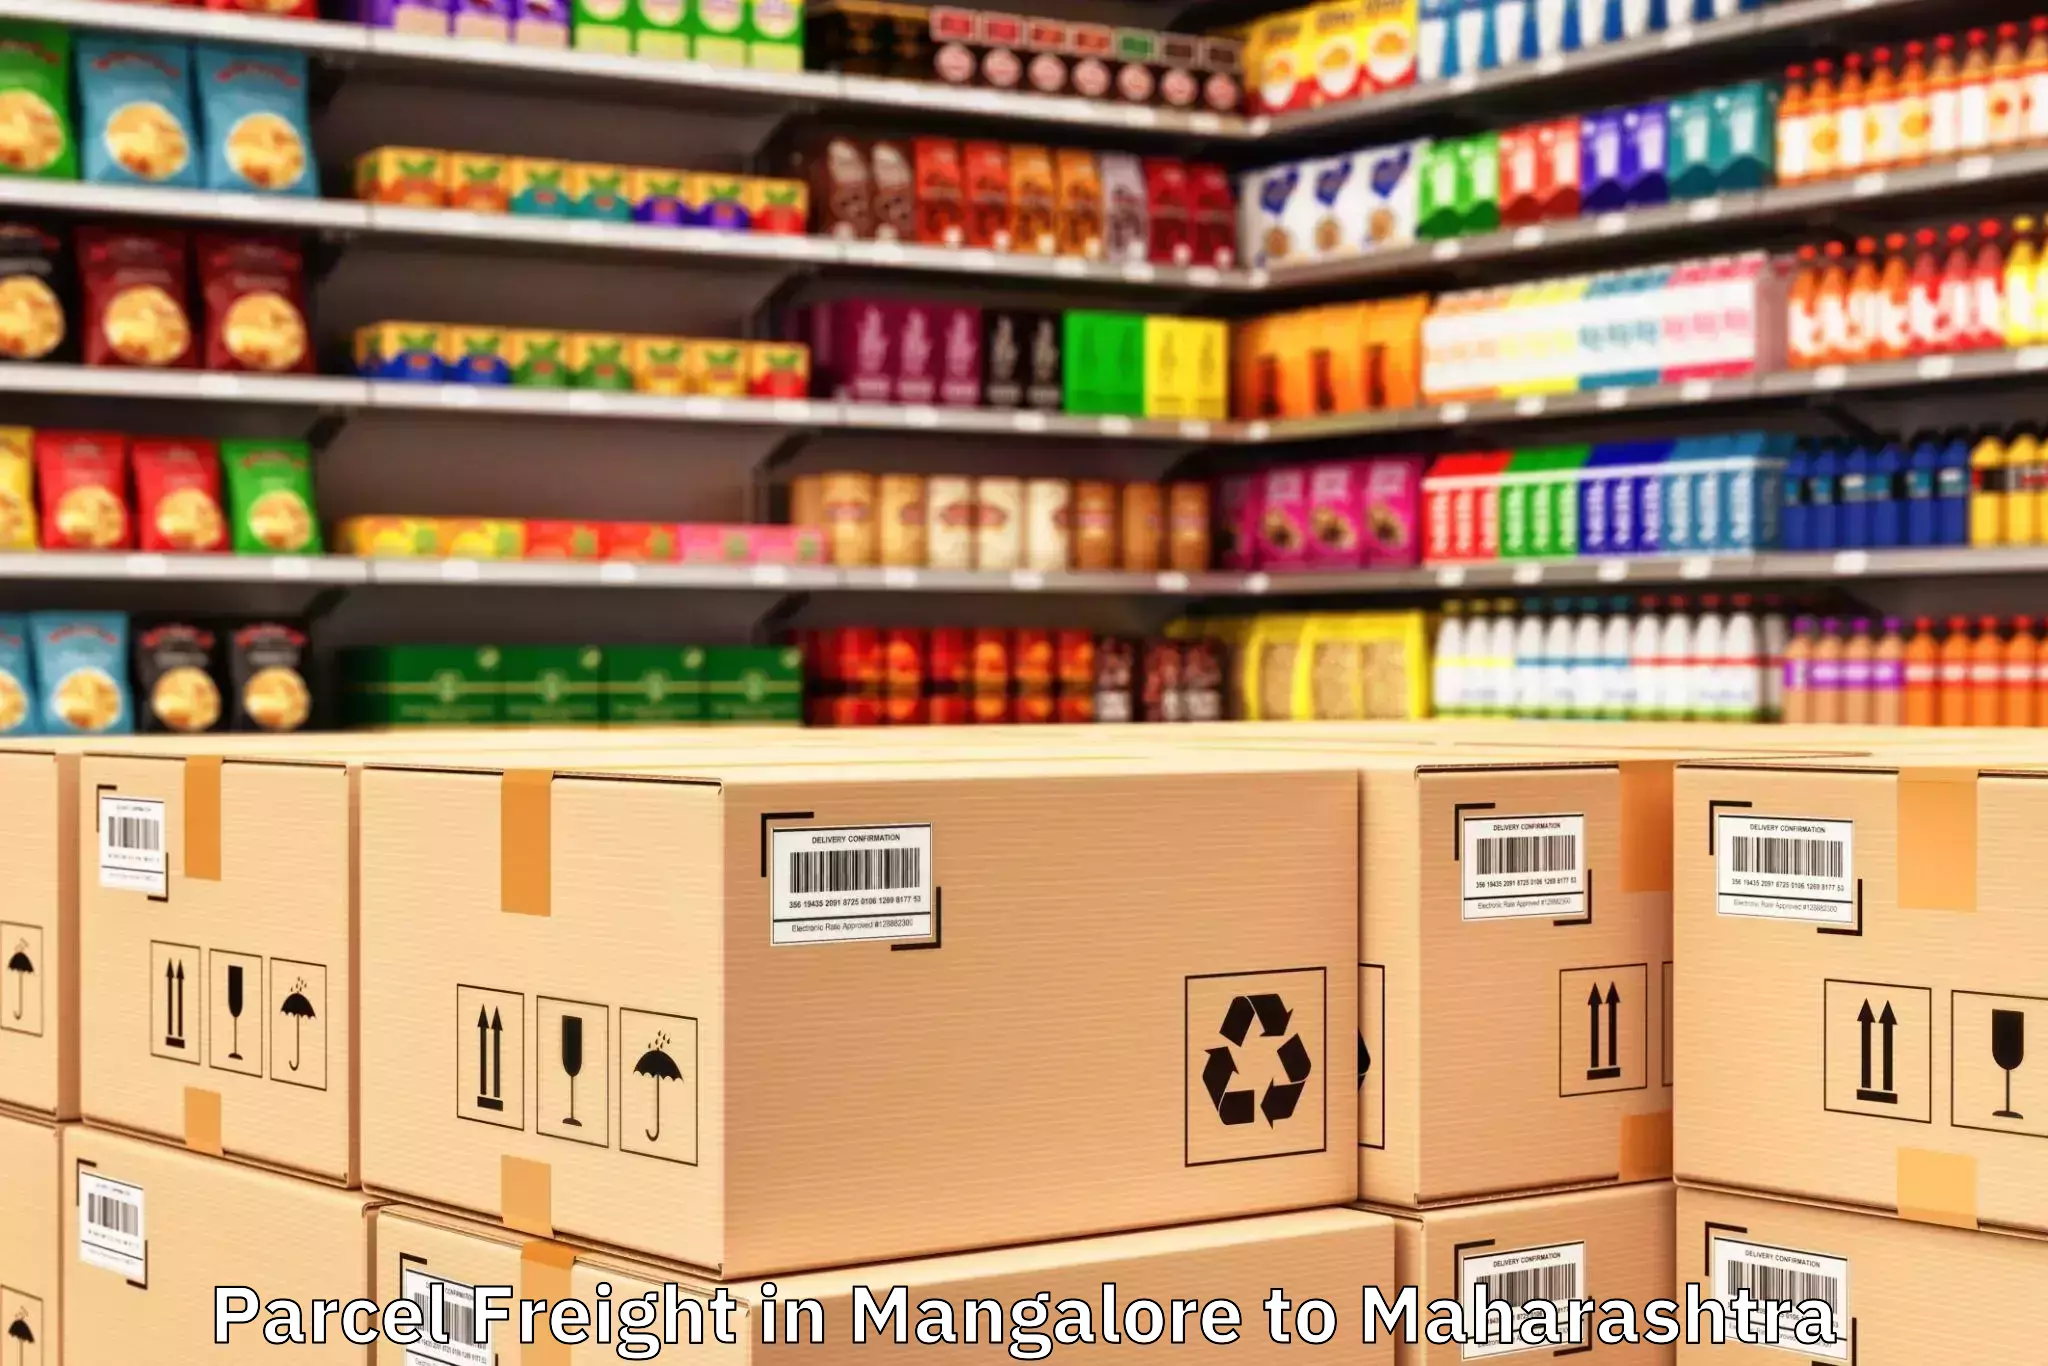 Quality Mangalore to Maharashtra Parcel Freight